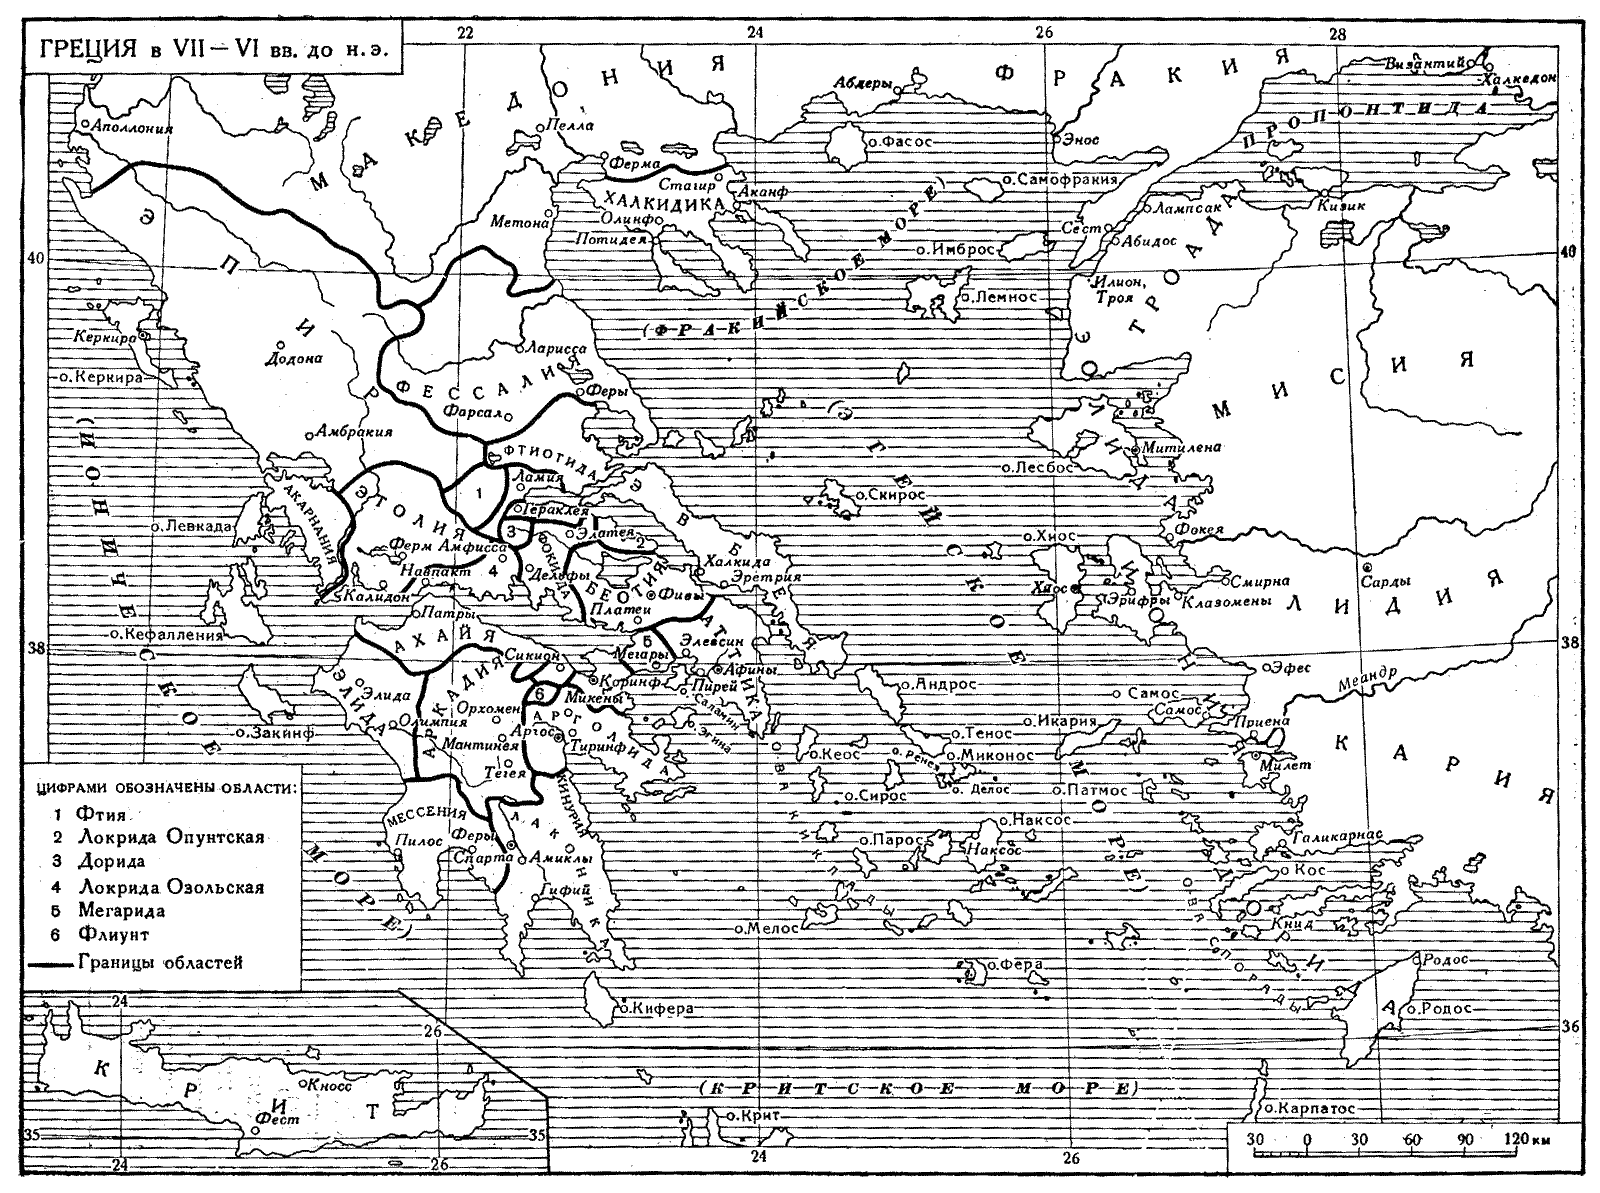 Карта. Греция в VII-VI вв. до н.э.